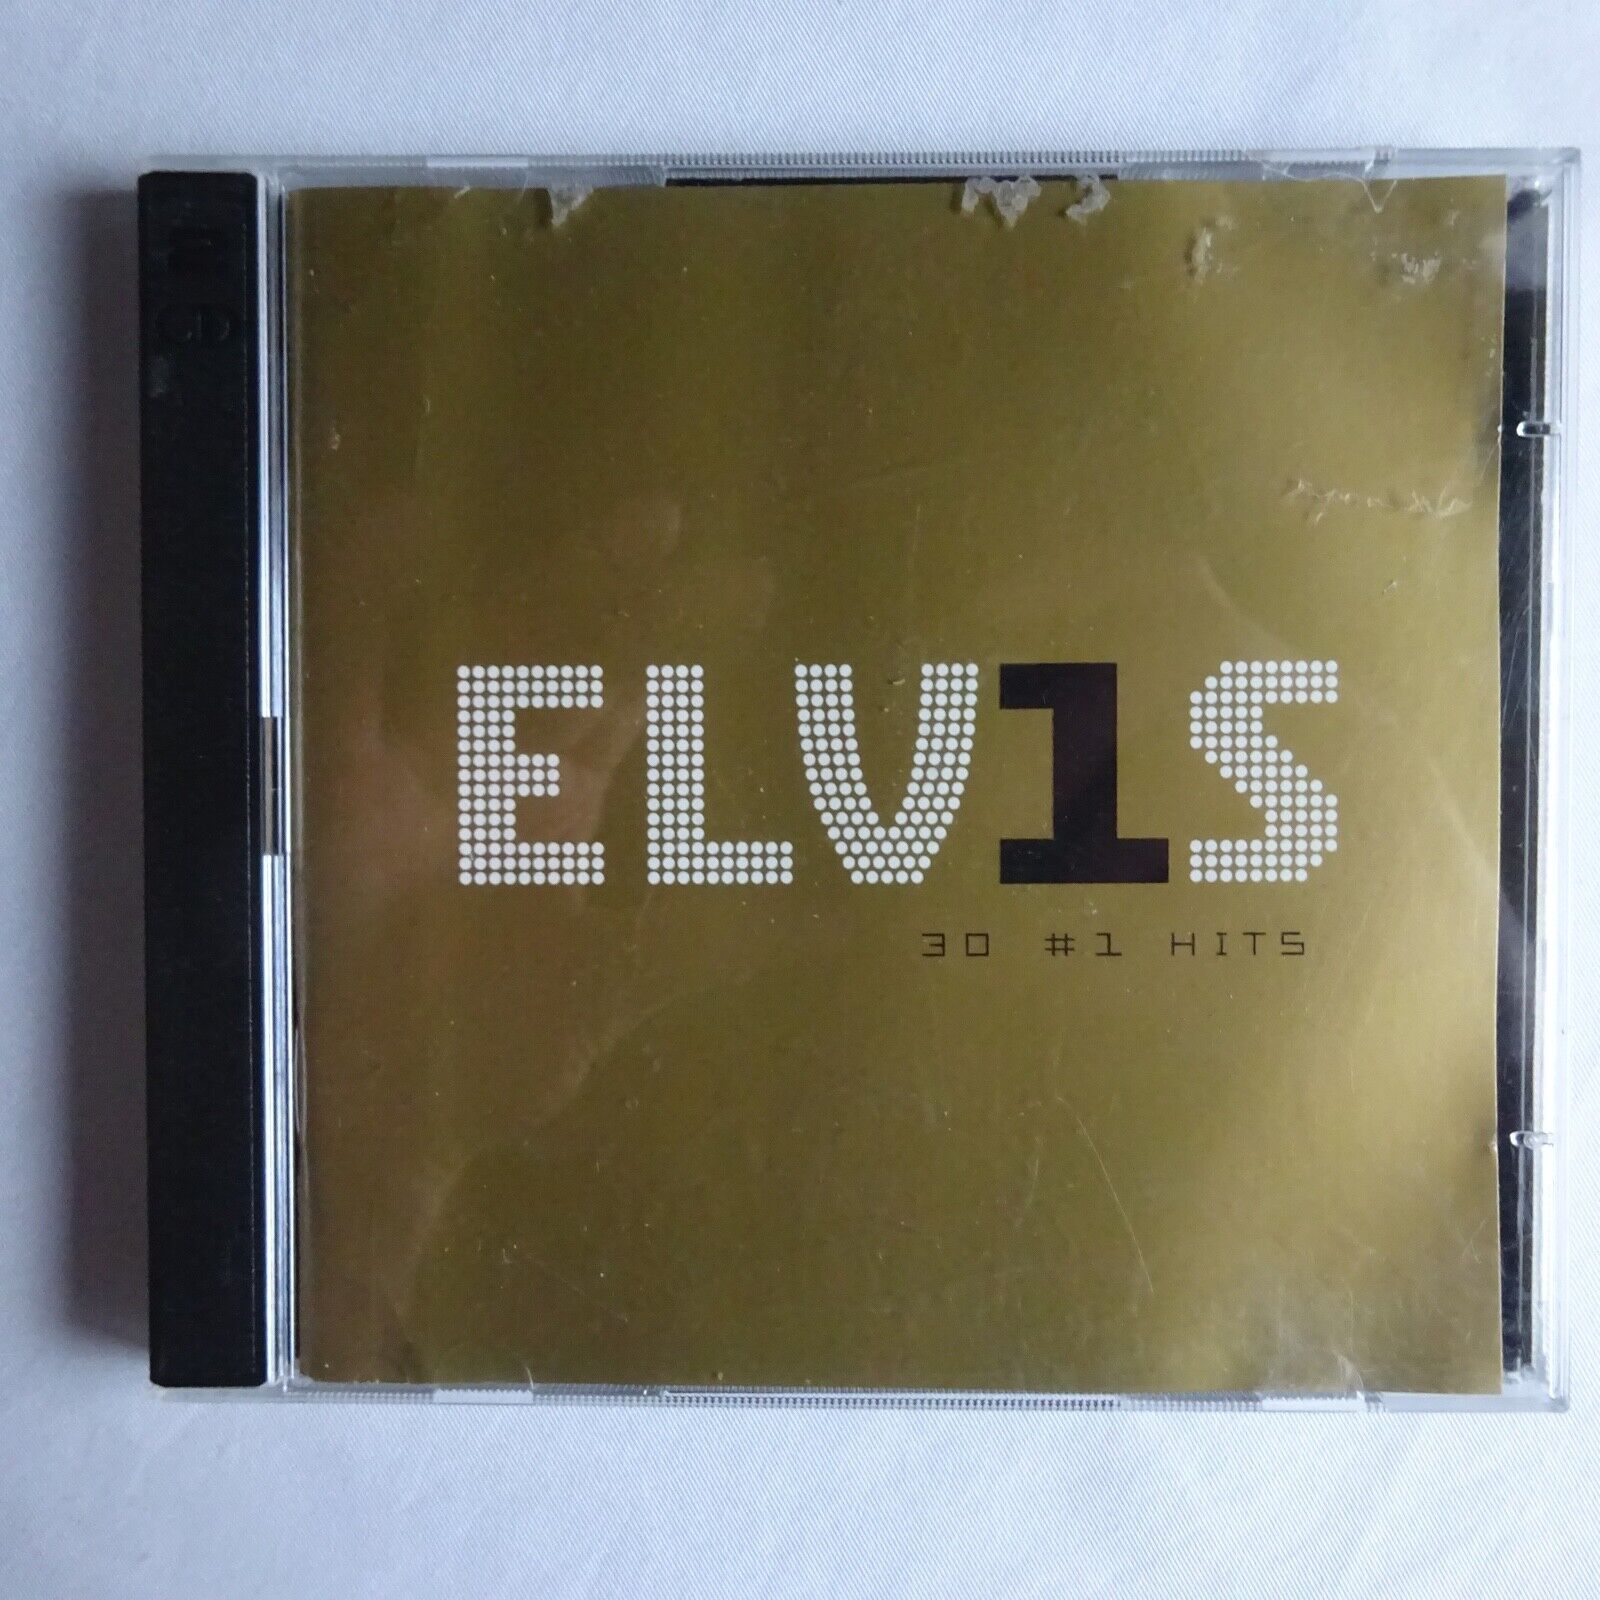 Elvis 30 # 1 Hits CD